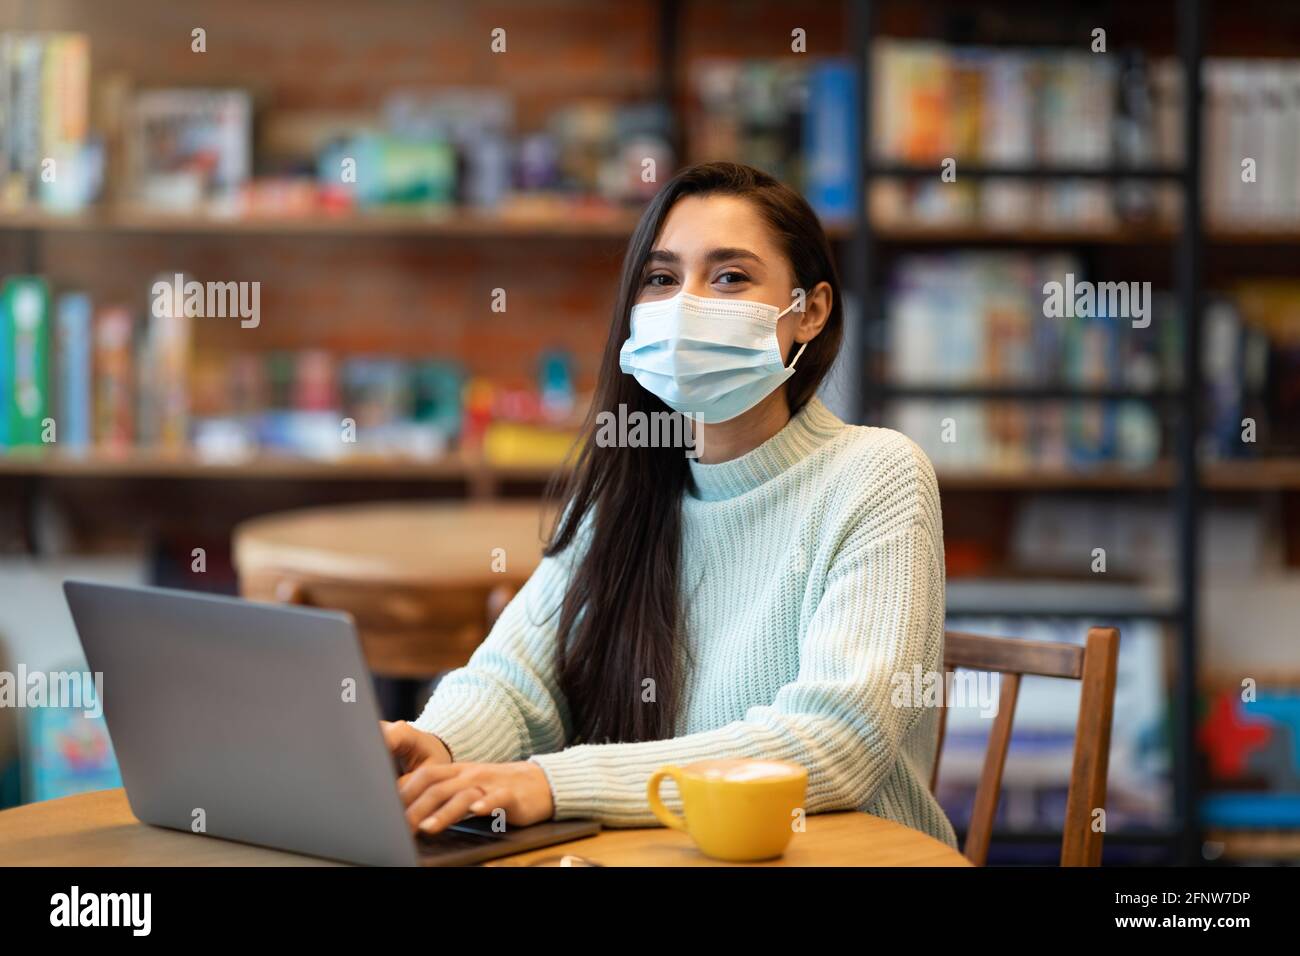 Giovane donna araba in maschera cercando lavoro durante la pandemia di covid-19, usando il laptop in caffetteria, controllando le posizioni vacanti in internet Foto Stock